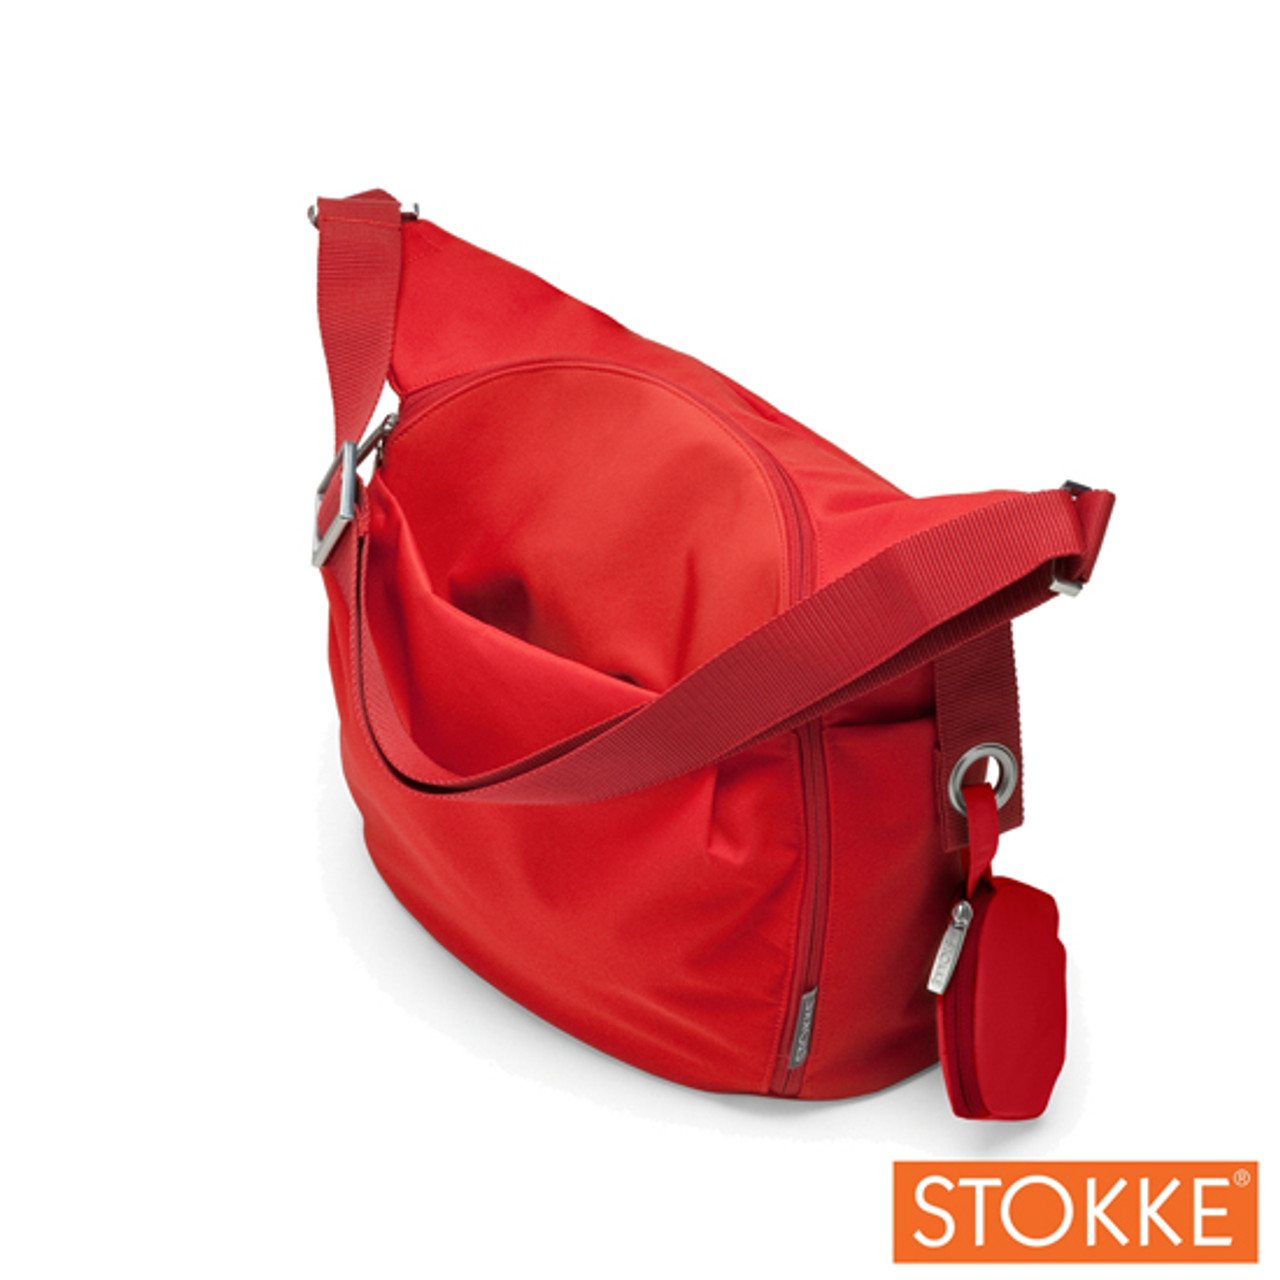 STOKKE Xplory Changing Bag Red | Kidsland